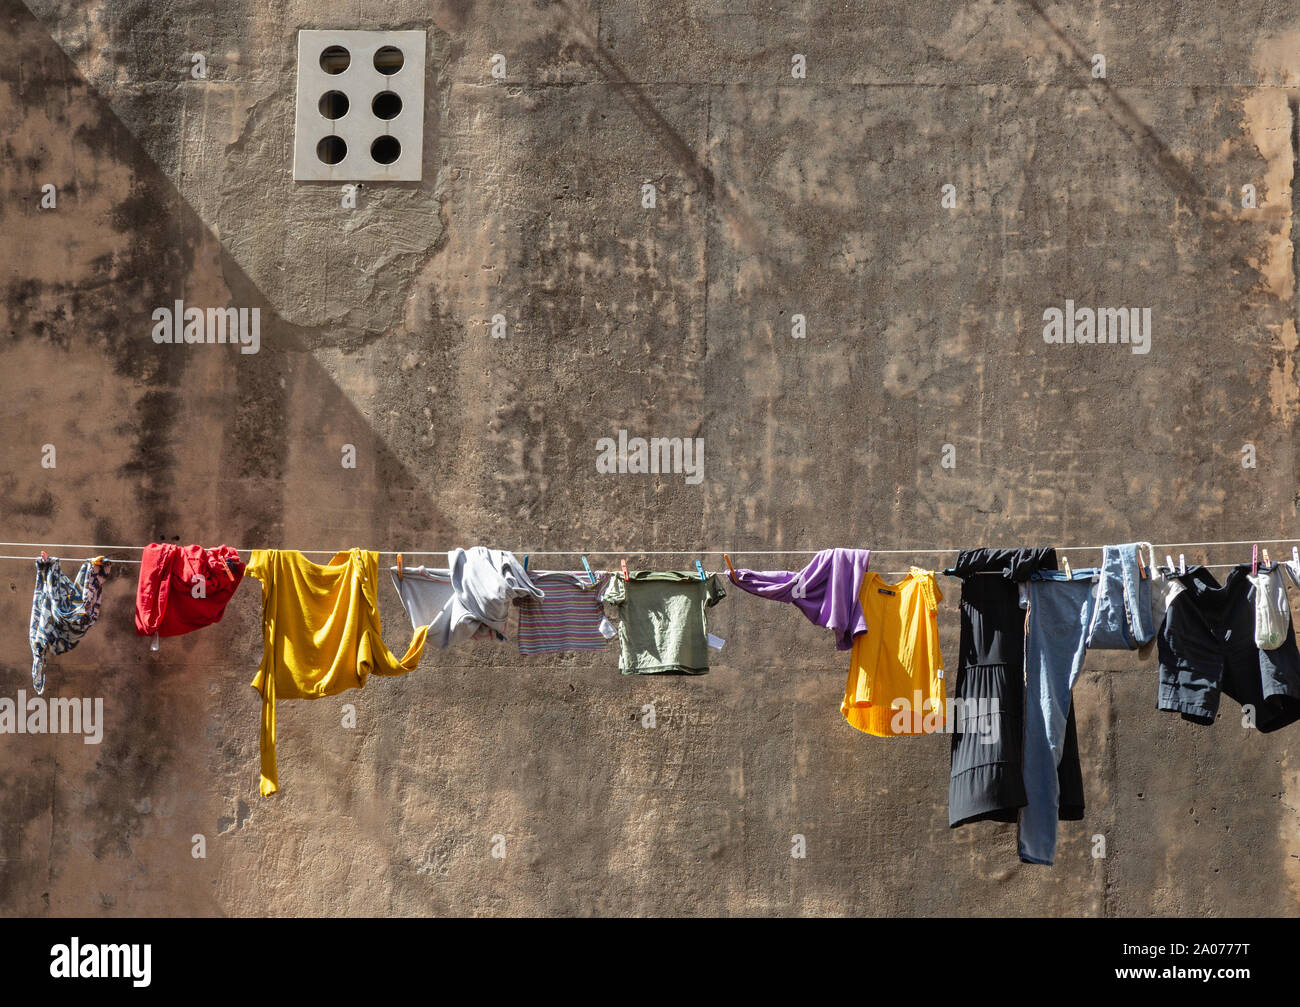 Kleidung - Kleidung zu trocknen, bunte Kleidung aufhängen mit Wäschetrockner, Dubrovnik Kroatien Europa Stockfoto